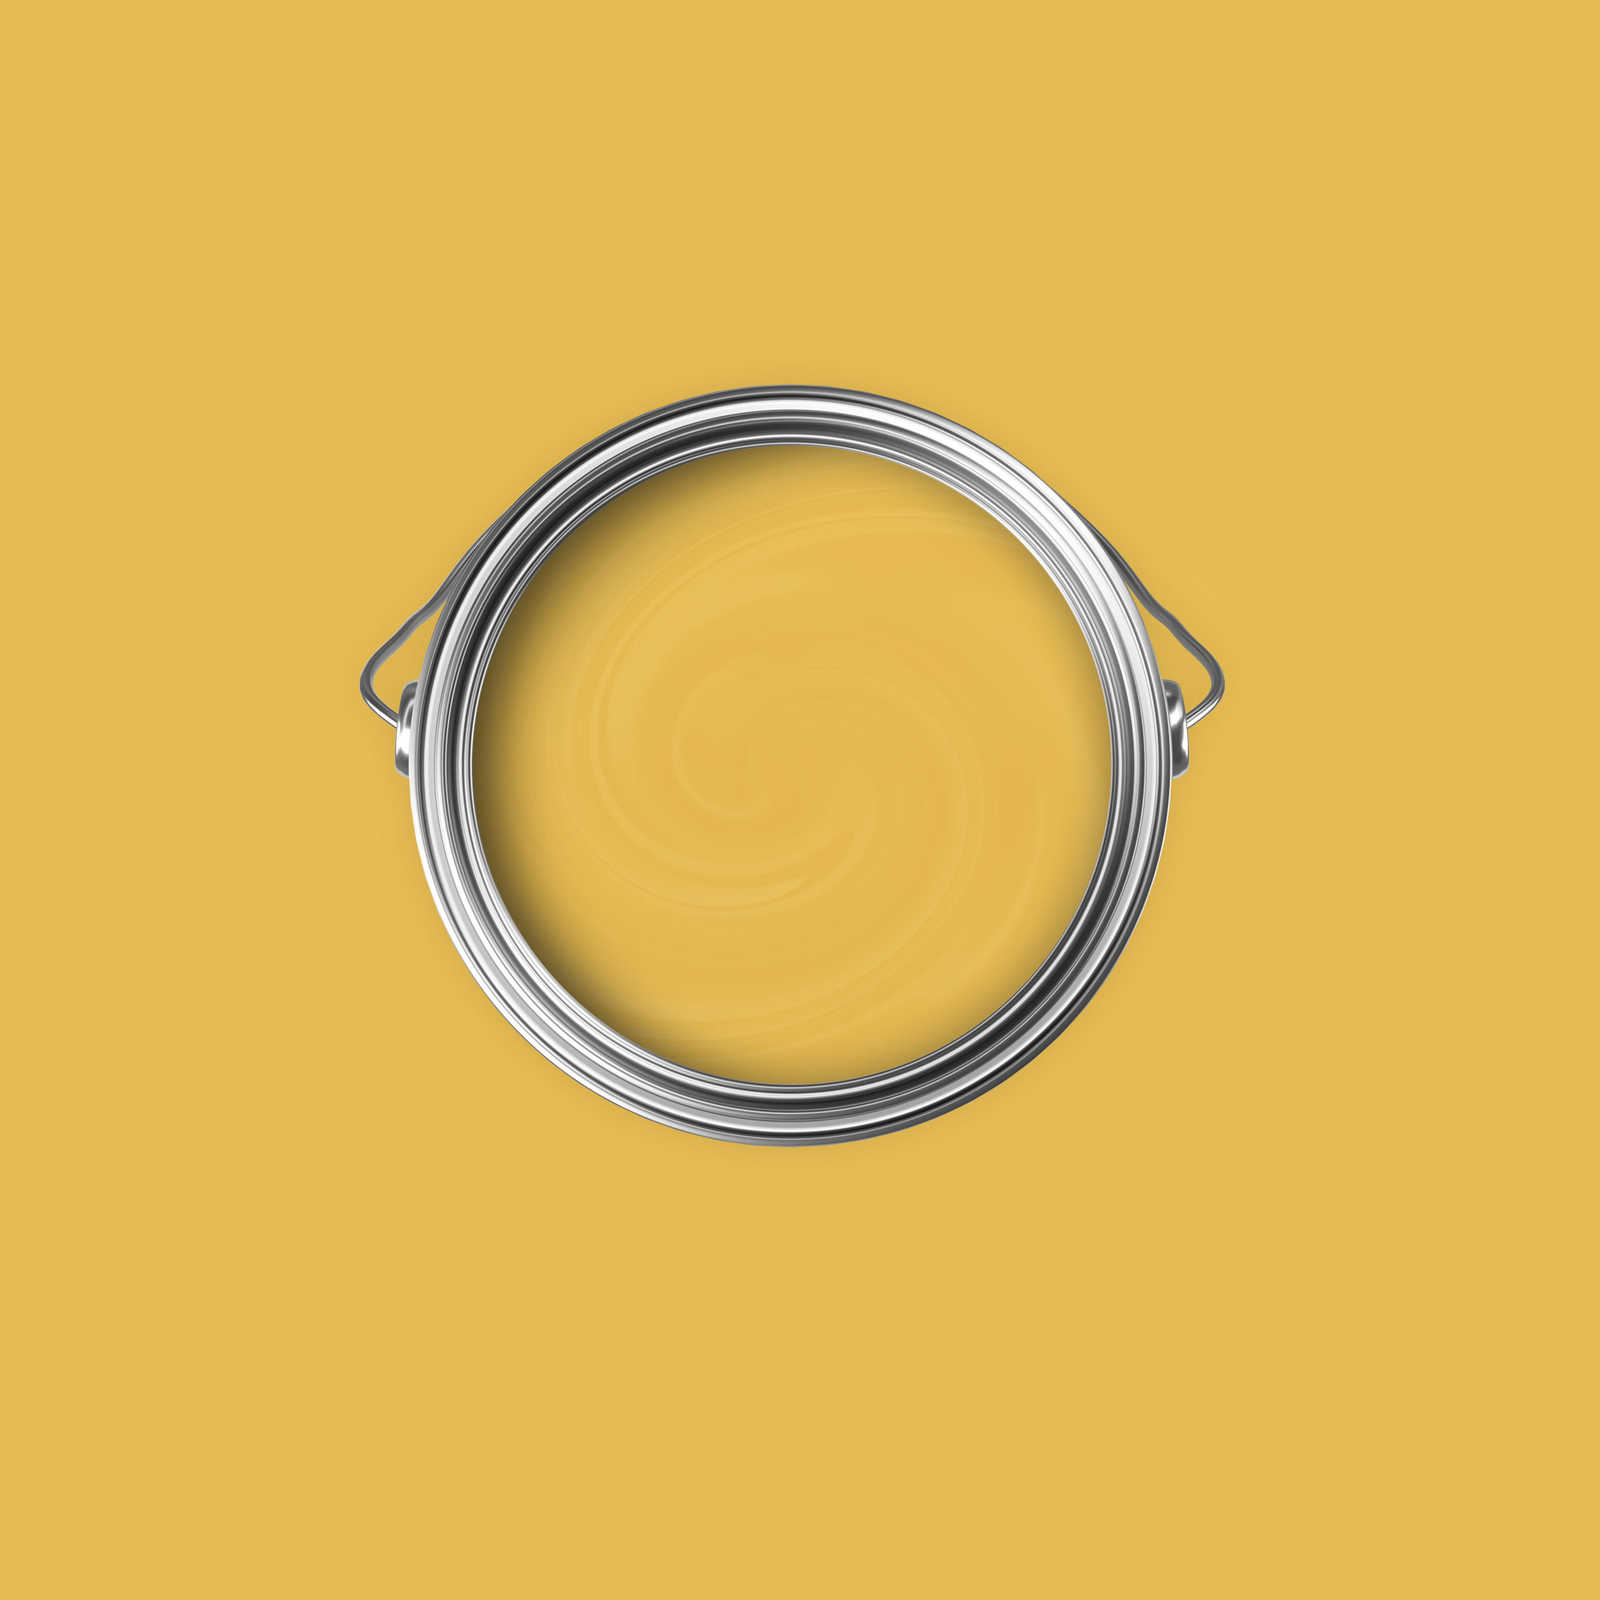             Pittura murale Premium Giallo senape brillante »Juicy Yellow« NW802 – 2,5 litri
        